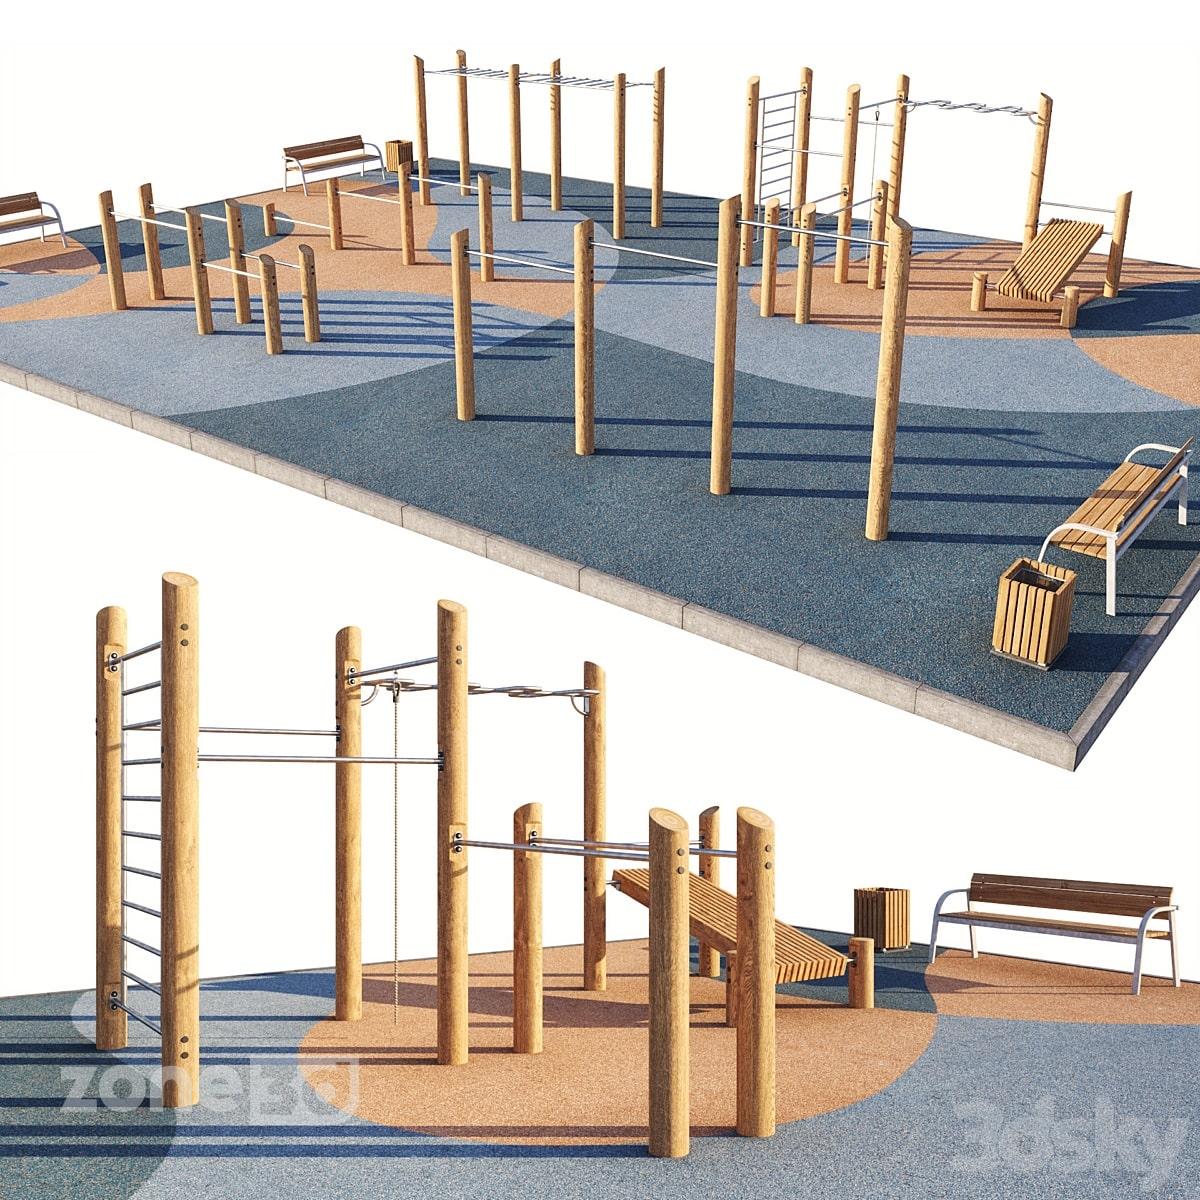 آبجکت زمین تمرین ورزشی به همراه لوازم چوبی و فلزی تمرین و نیمکت